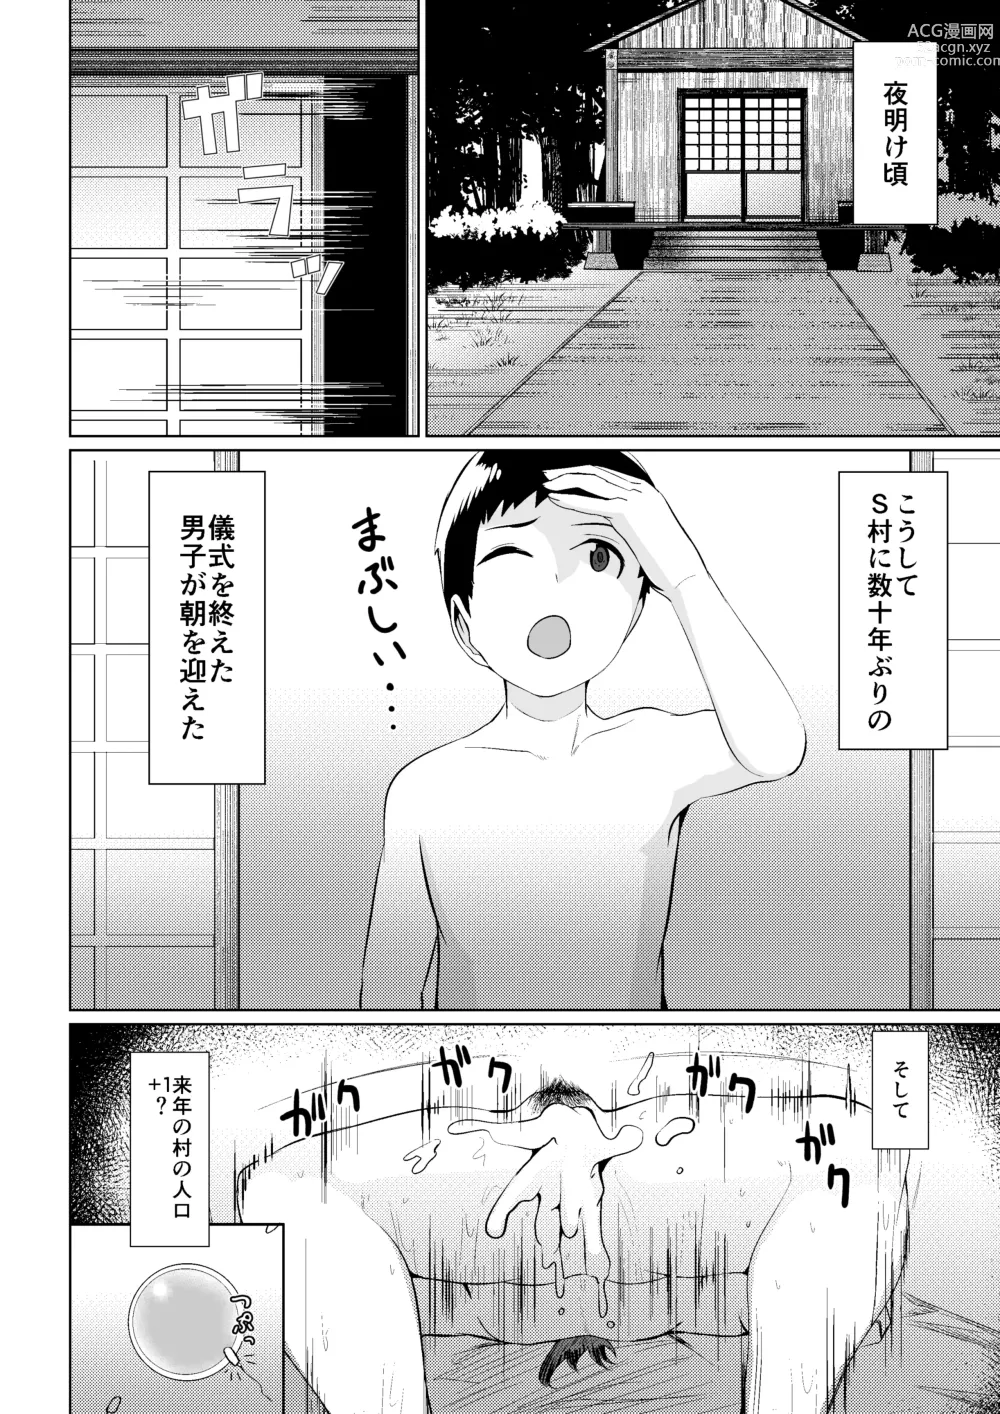 Page 24 of doujinshi Mura no Okite wa Zettai desu